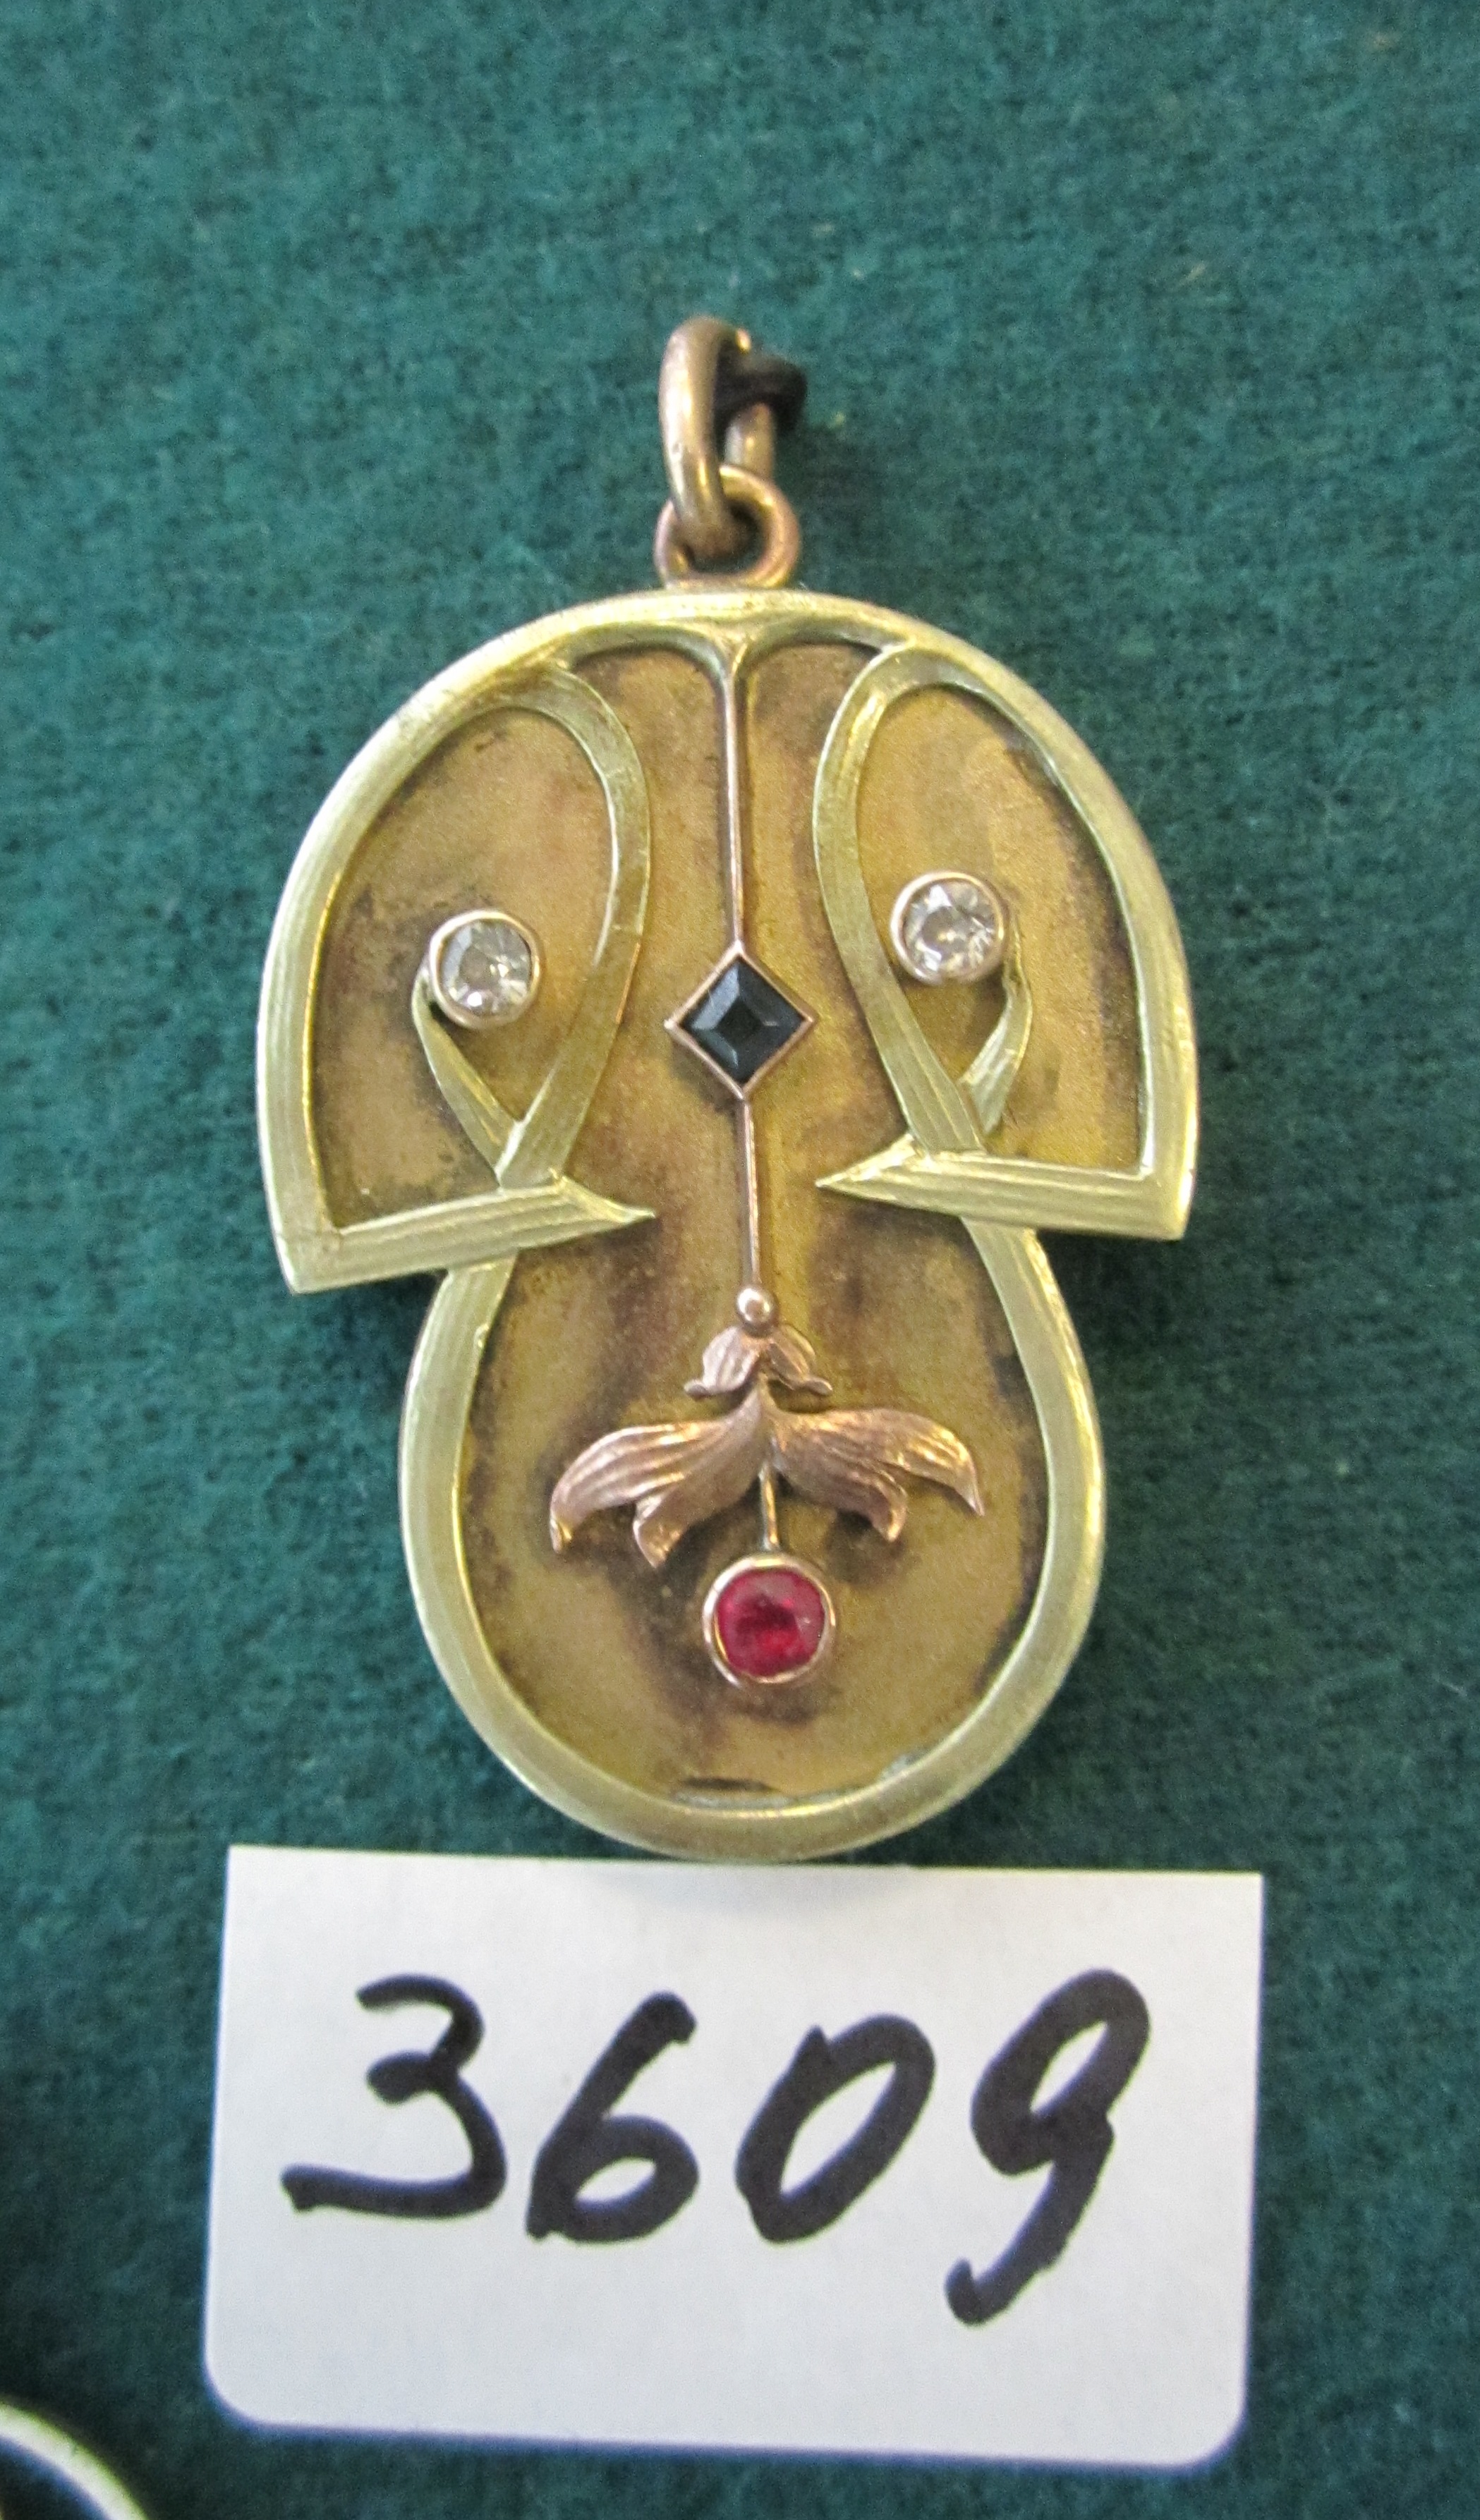 Медальйон у вигляді гриба.  3-х кольорове золото, два діаманта, сапфір, рубін.  Клейма Г.Ш. - майстер Шматов Гавриїл, інв.№ 3609